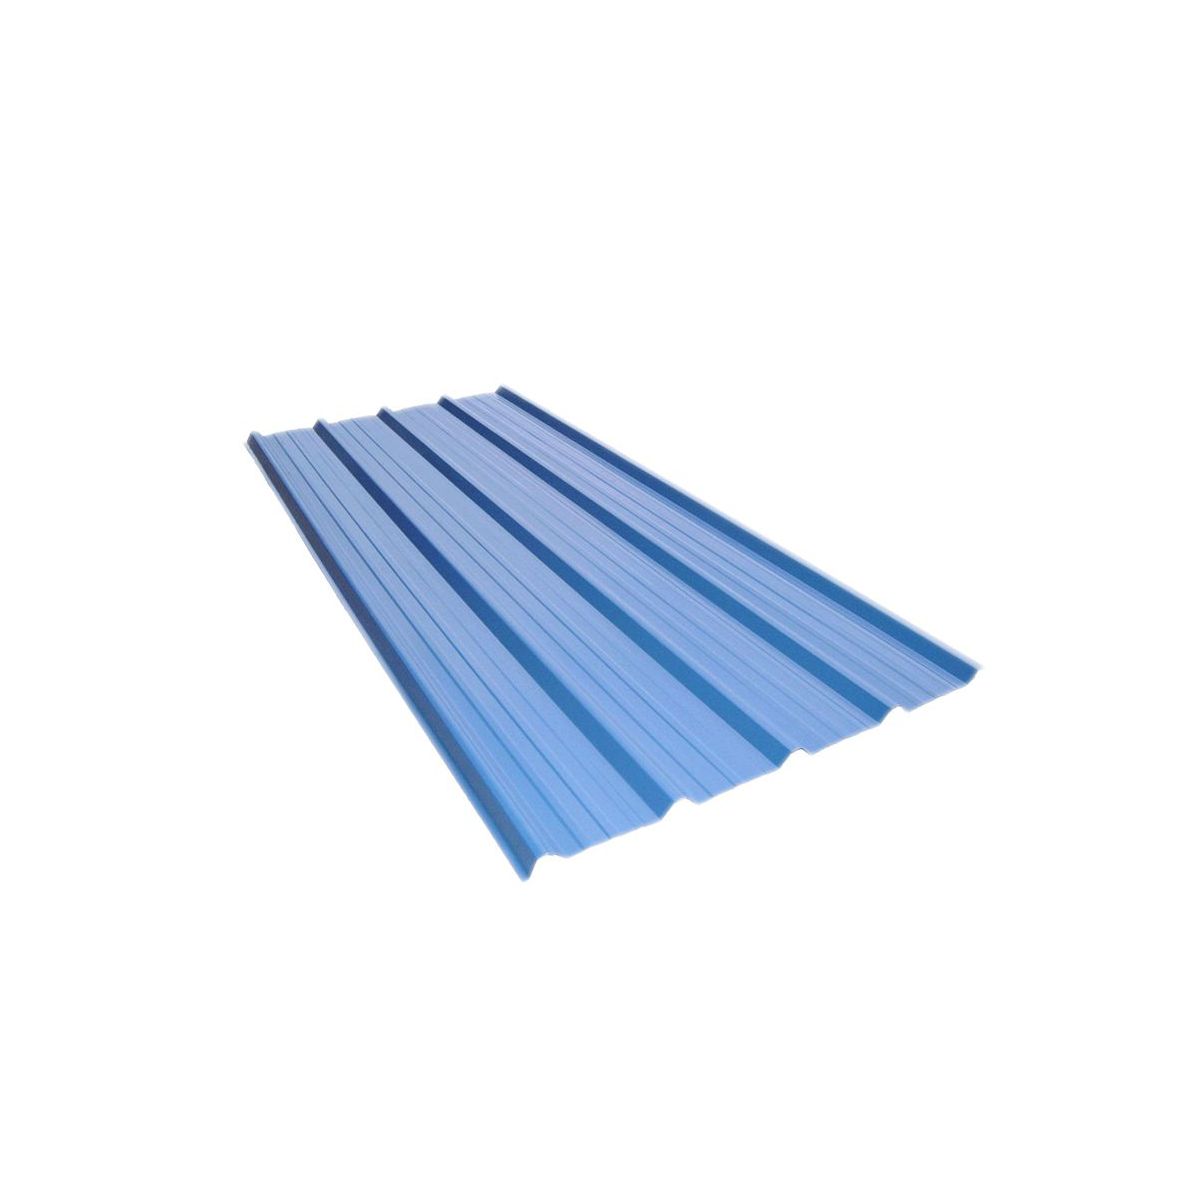 Tôle de toiture acier galvanisé - Ral 5010 (bleu gentiane) - Longueur 4m